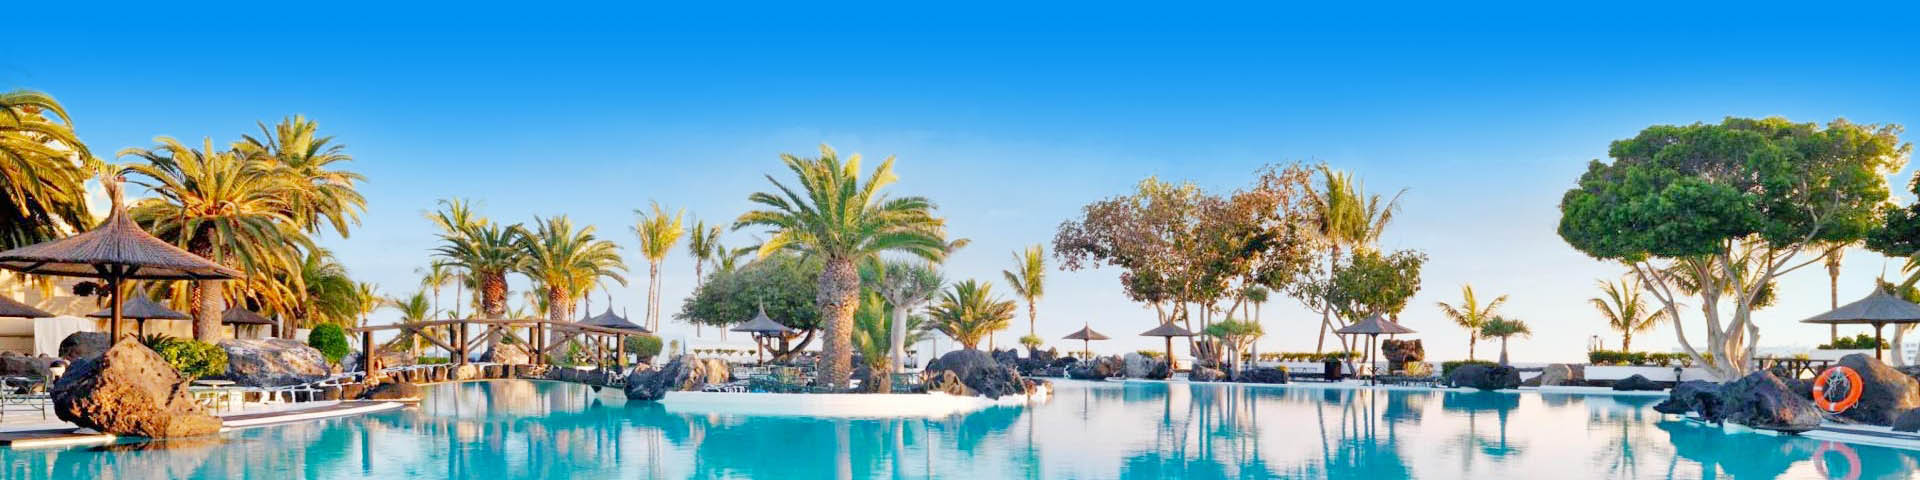 Ruim zwembad van een hotel op de Canarische Eilanden